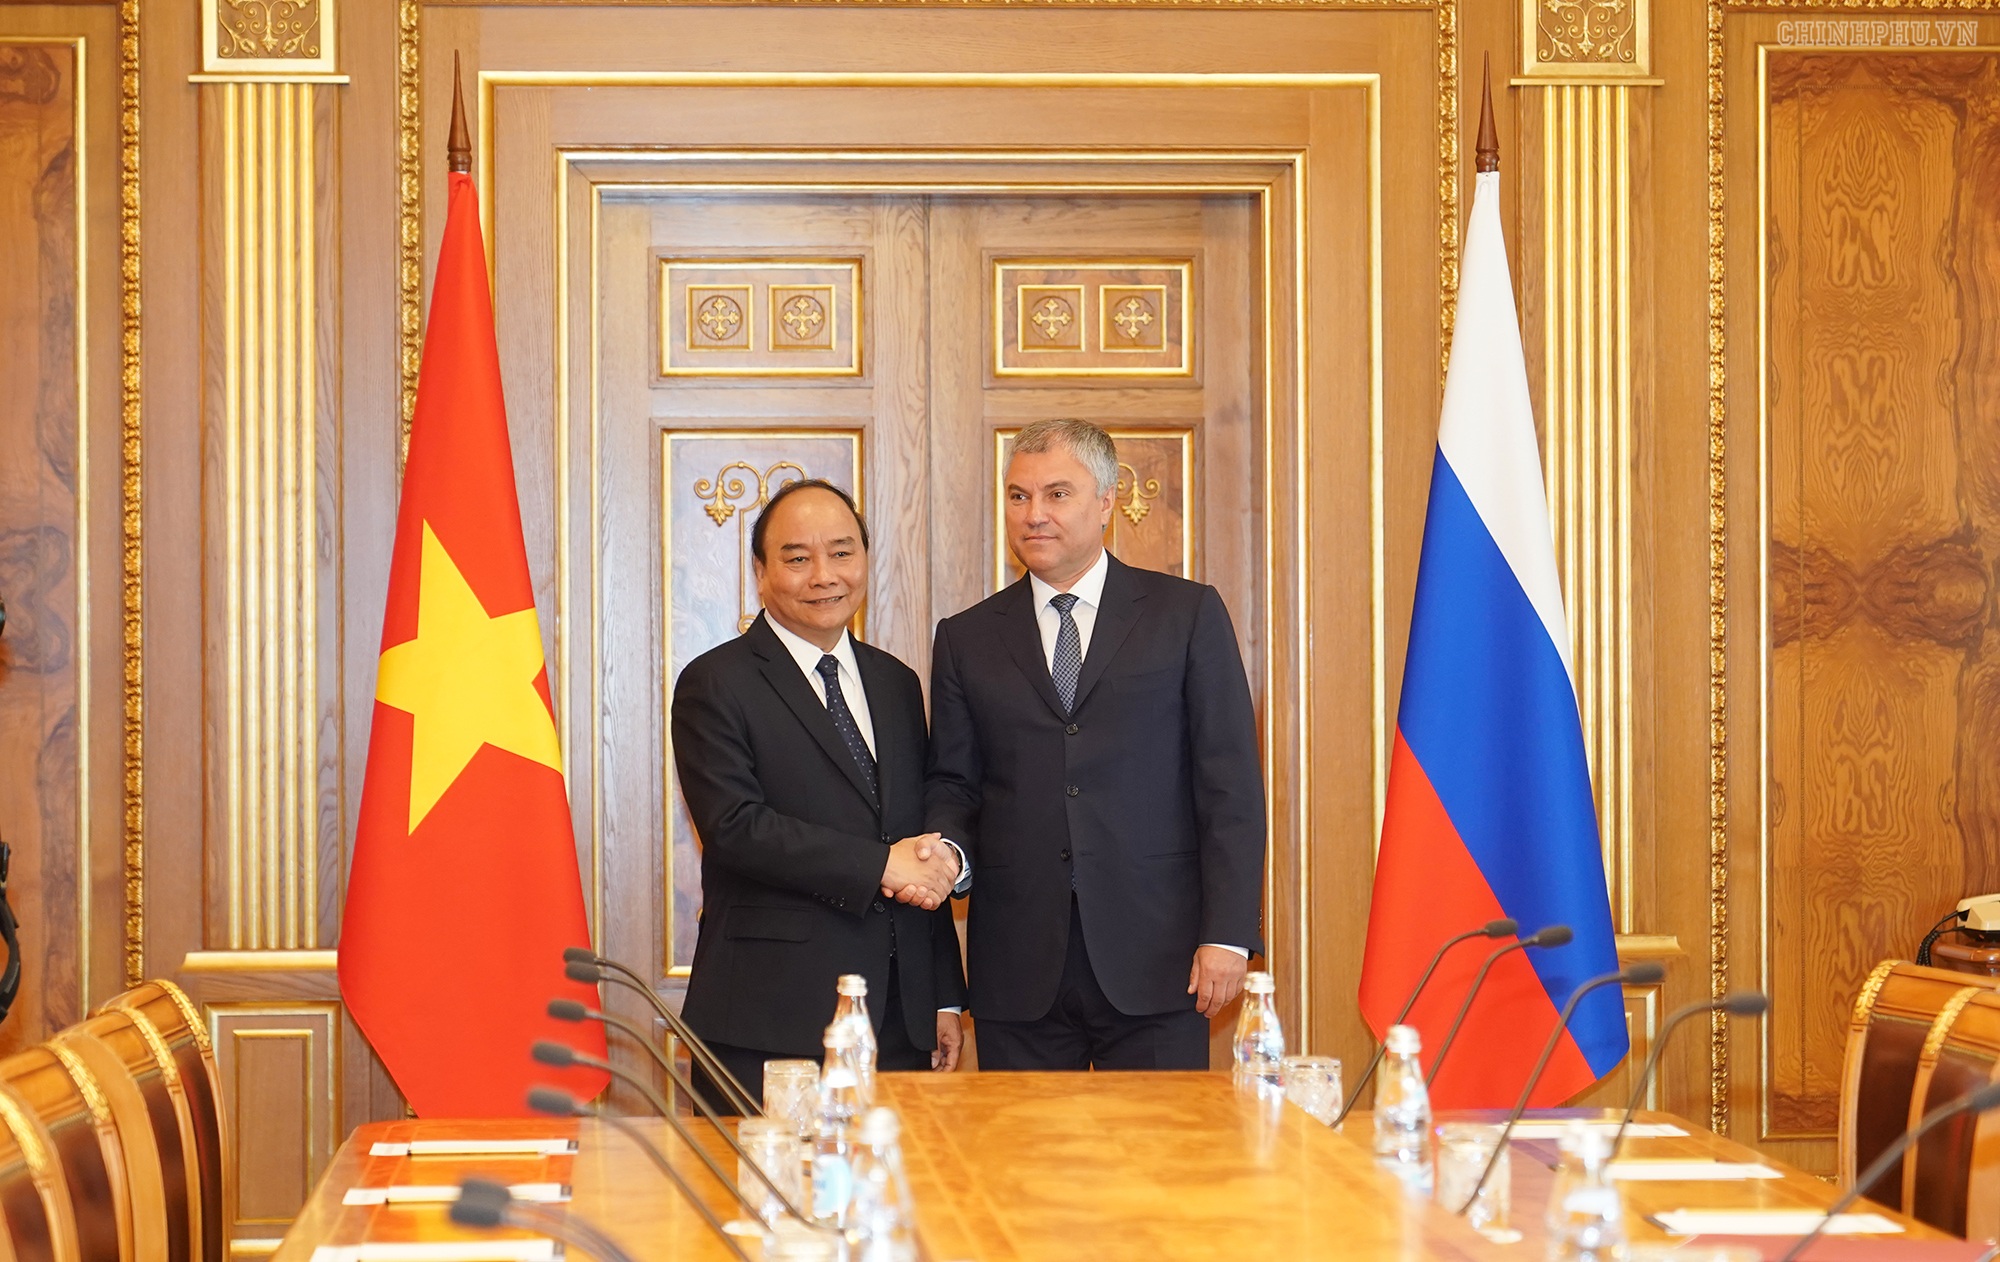 Thủ tướng Nguyễn Xuân Phúc hội kiến Chủ tịch Duma và Chủ tịch Hội đồng Liên bang Nga